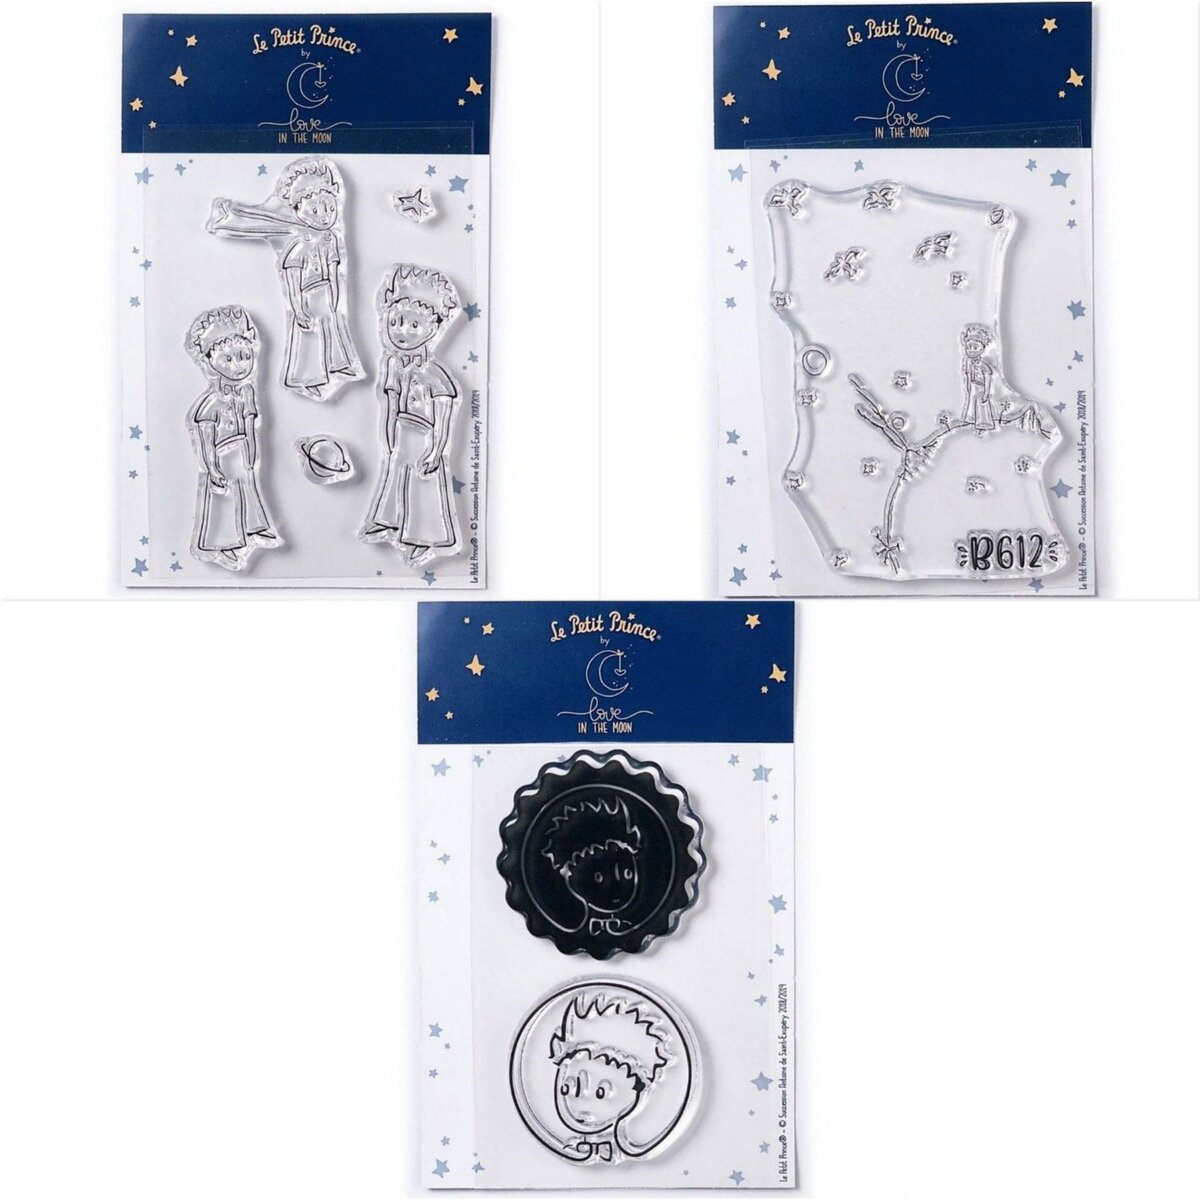  6 Tampons transparents Le Petit Prince et messages + Astéroïd + Portraits